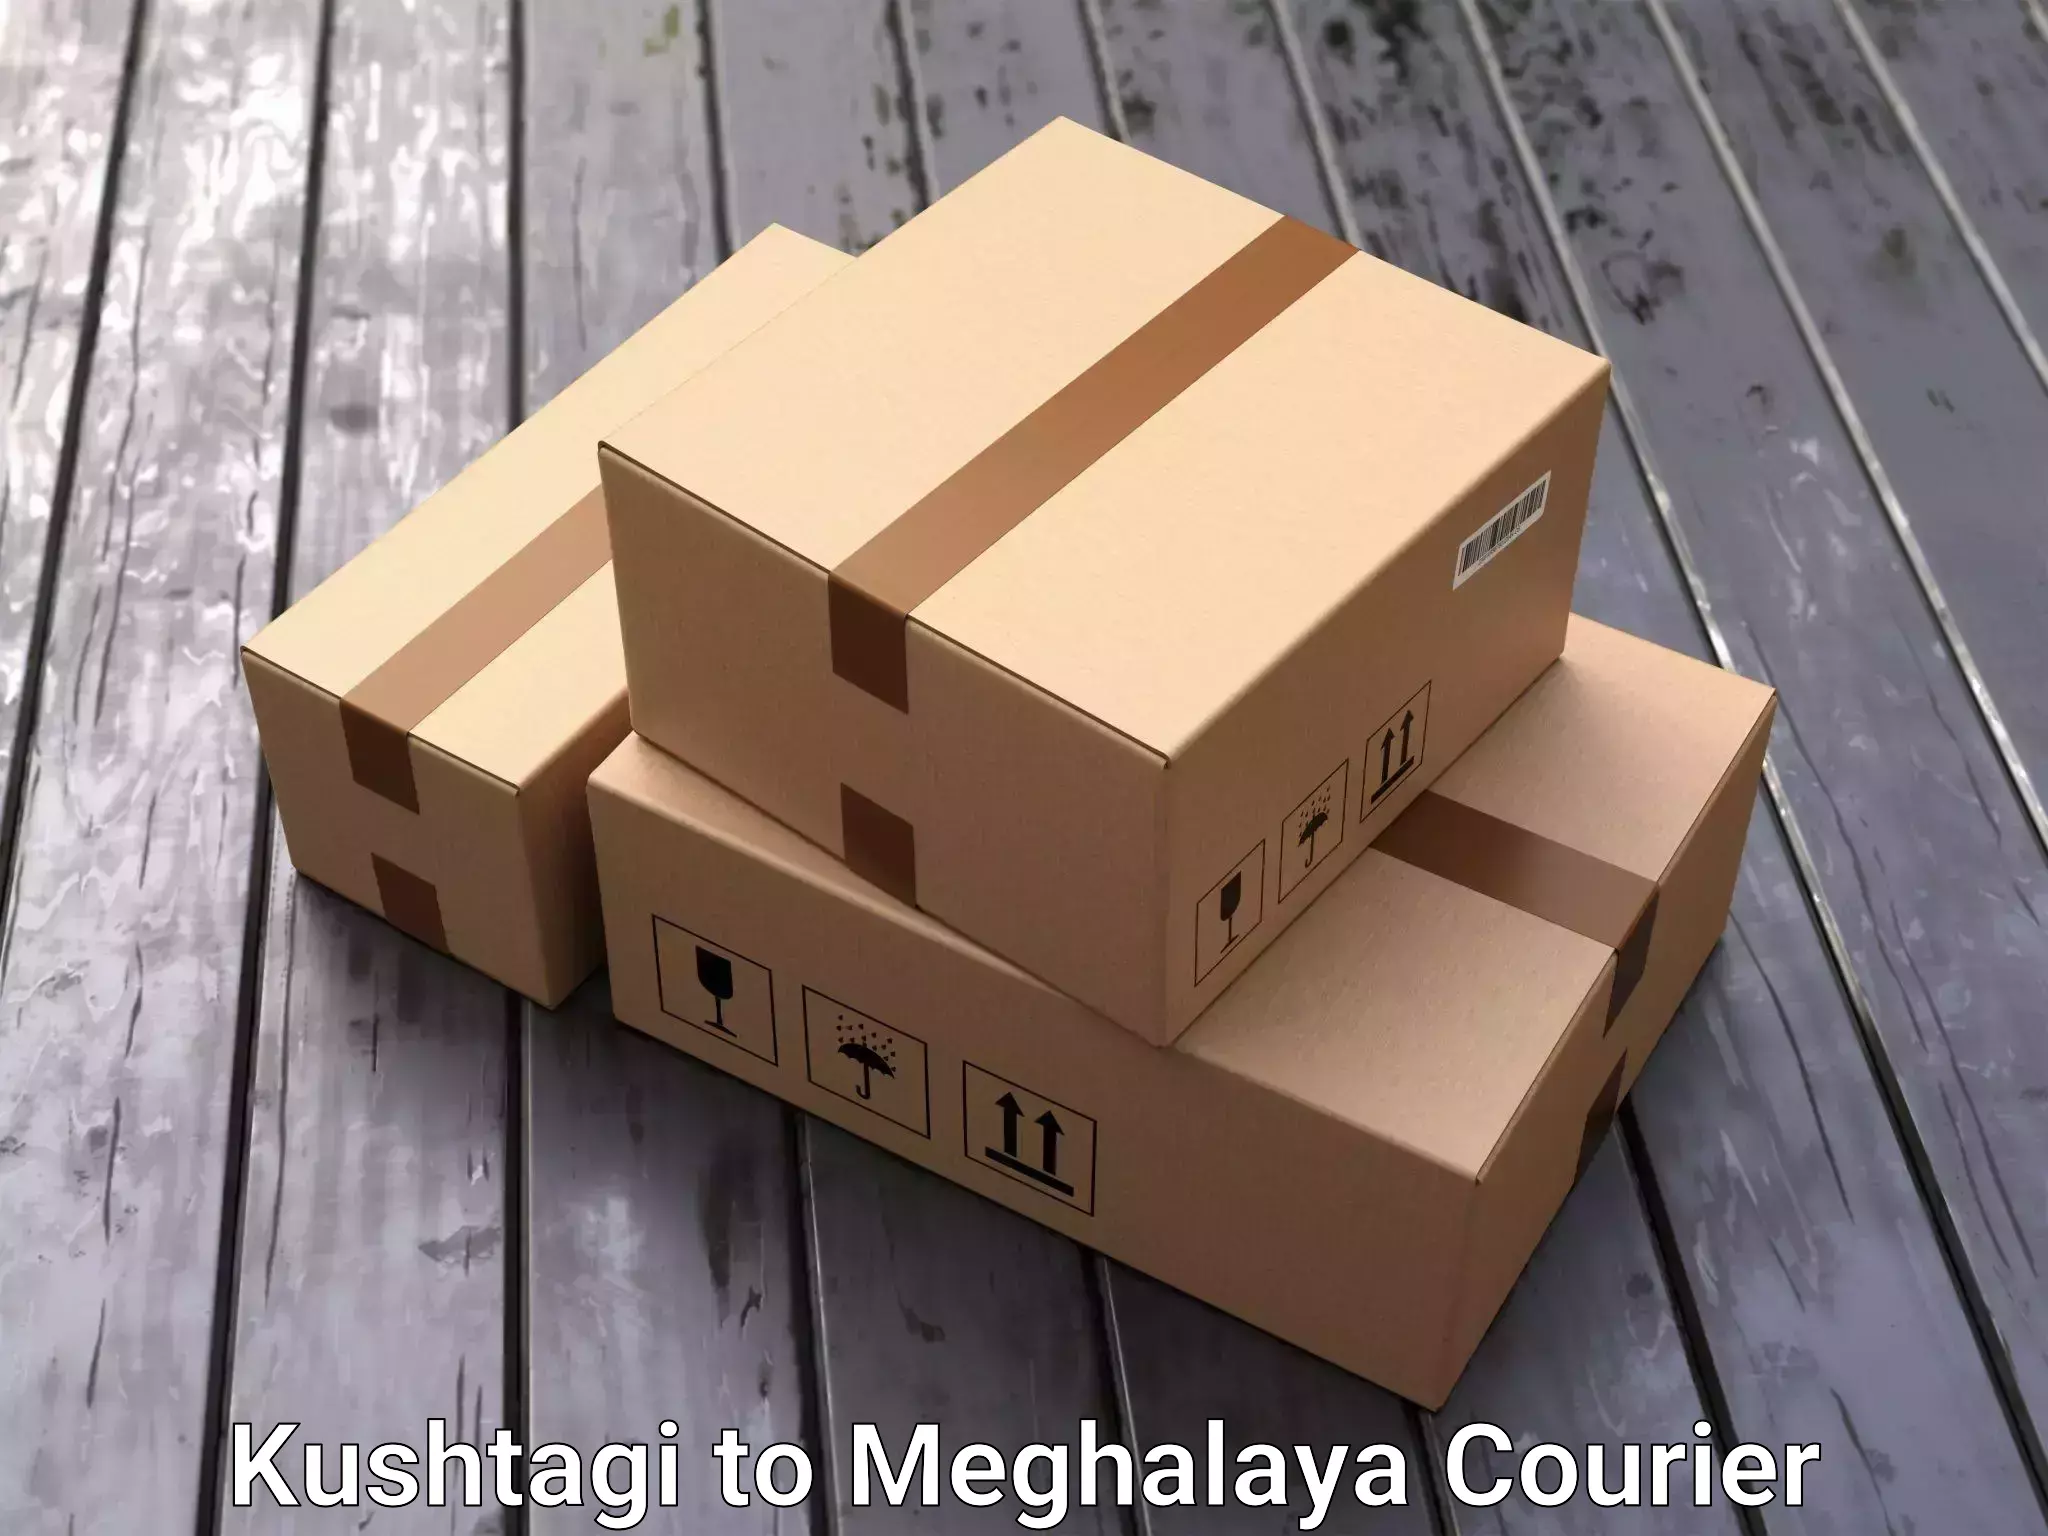 Professional goods transport in Kushtagi to Meghalaya